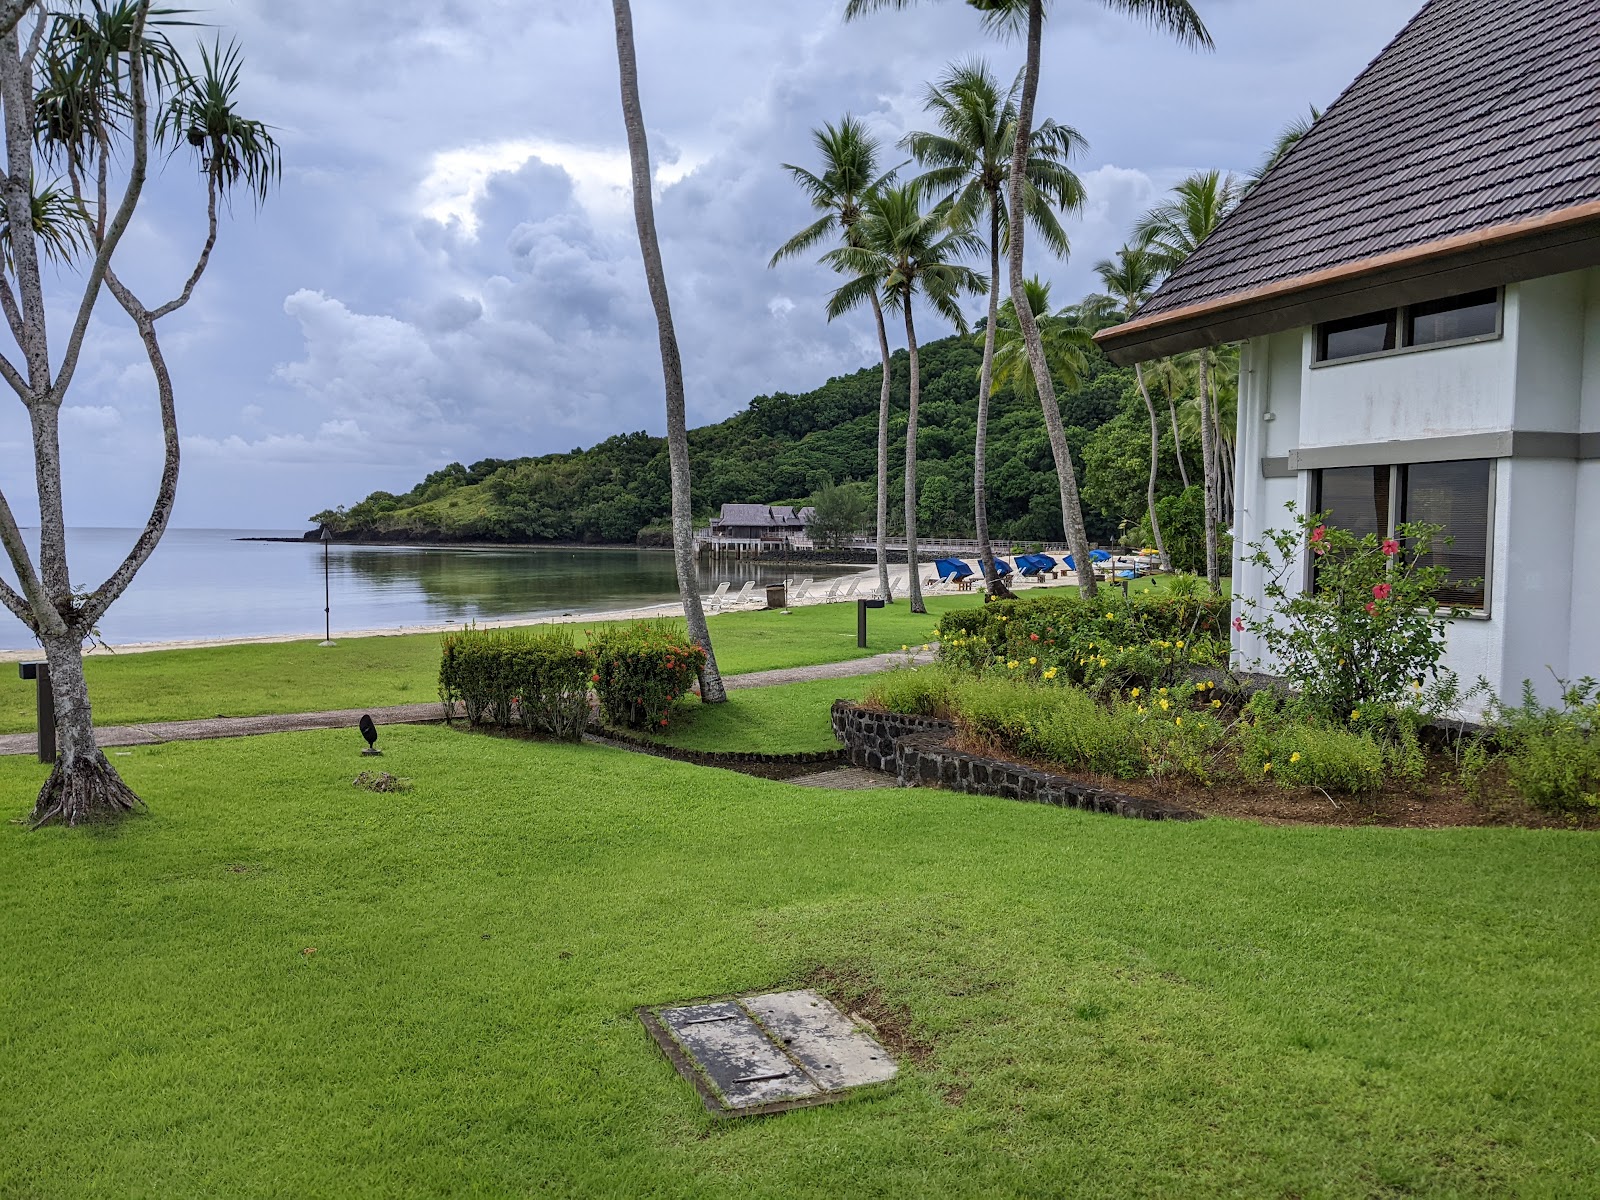 Foto de Palau Pacific Resort respaldado por acantilados